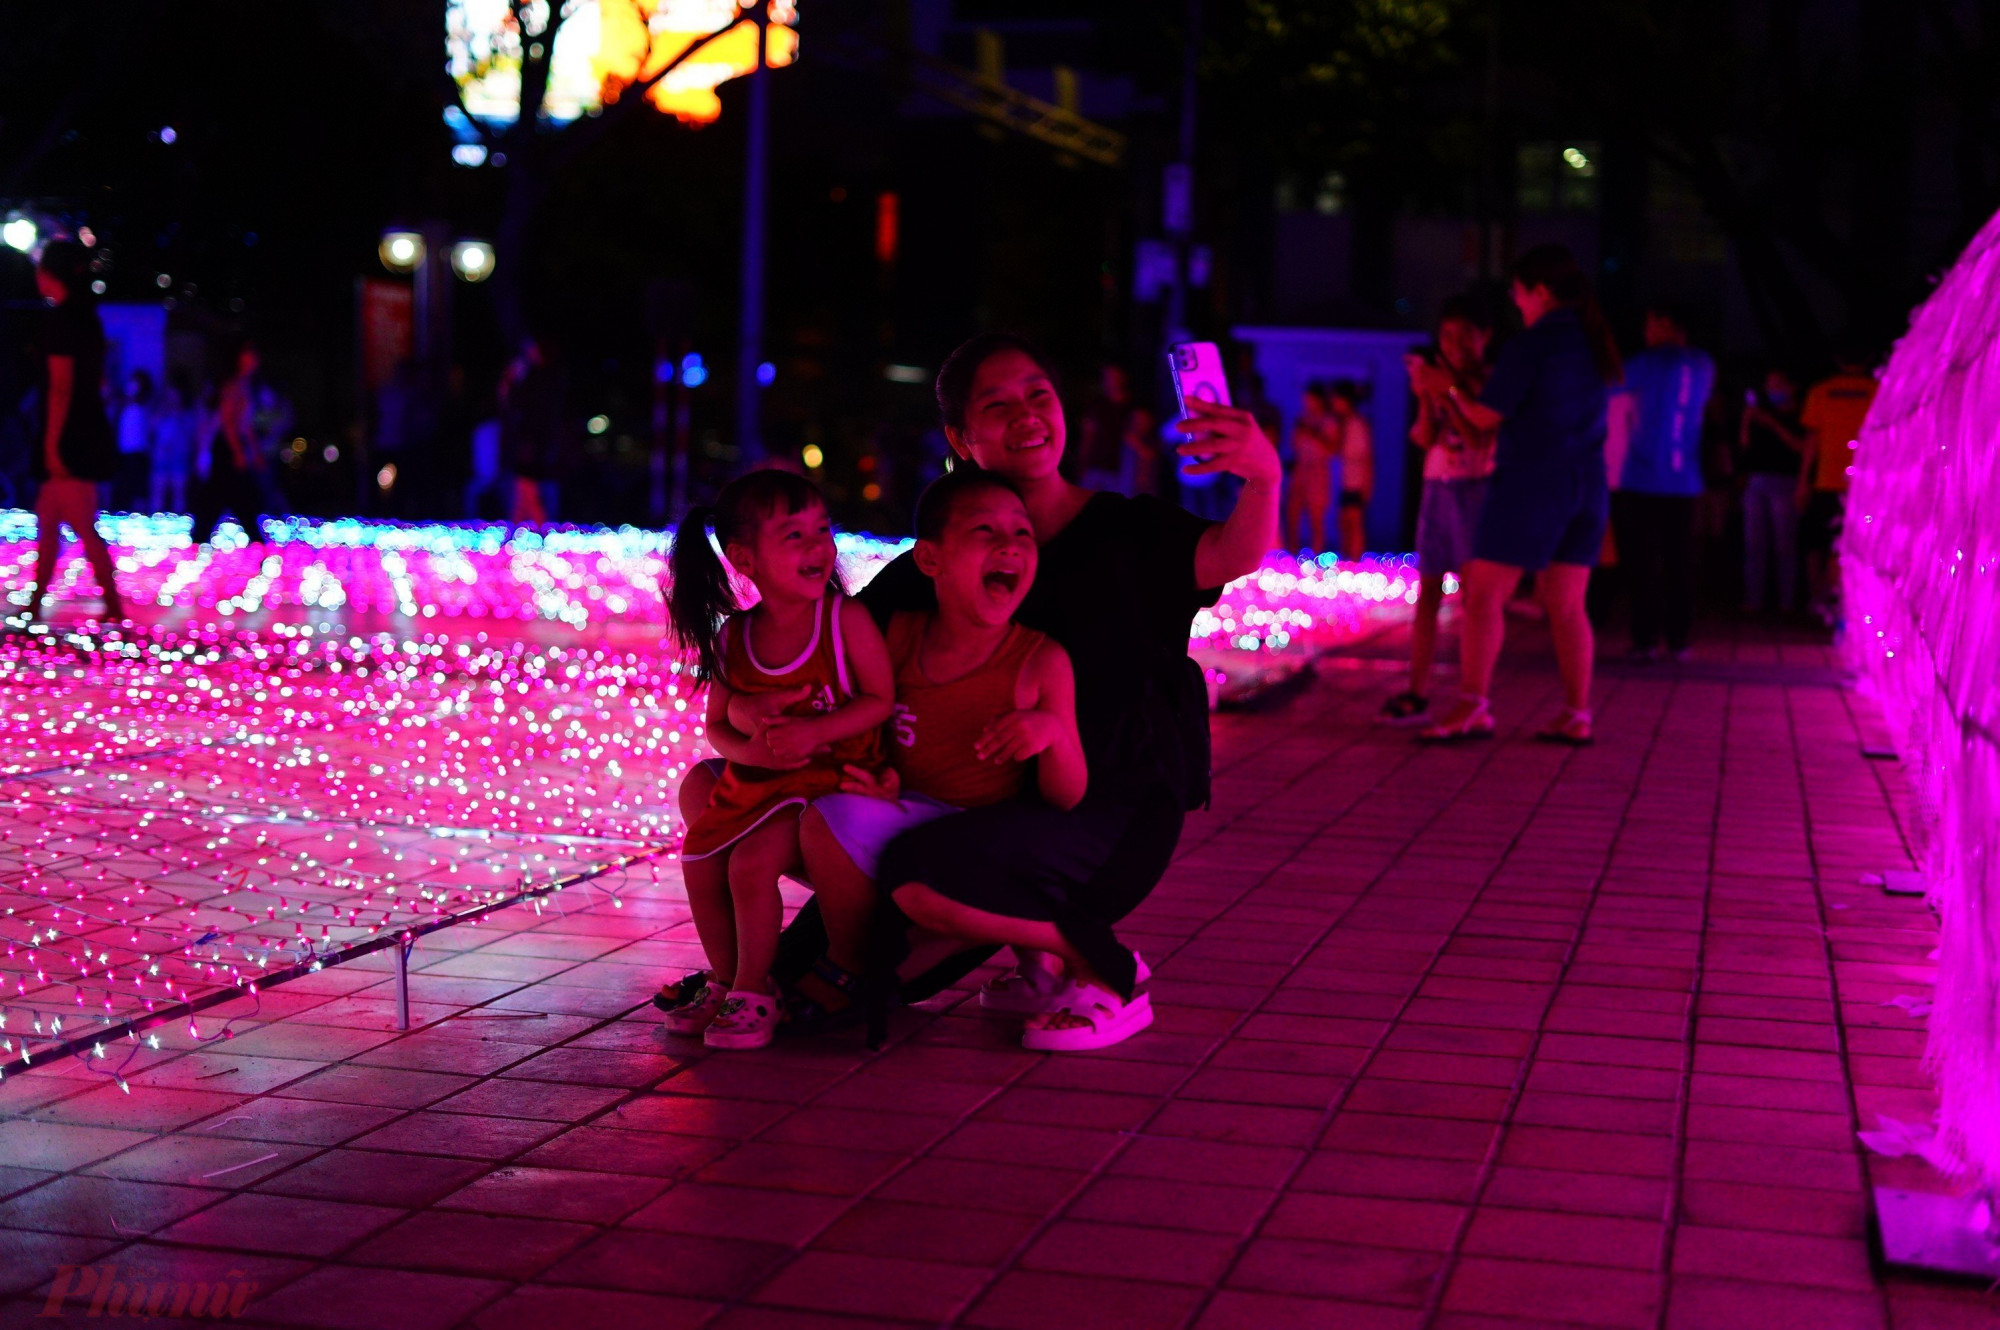 Đây cũng là không gian ánh sáng nghệ thuật lần đầu tiên diễn ra tại Đà Nẵng.